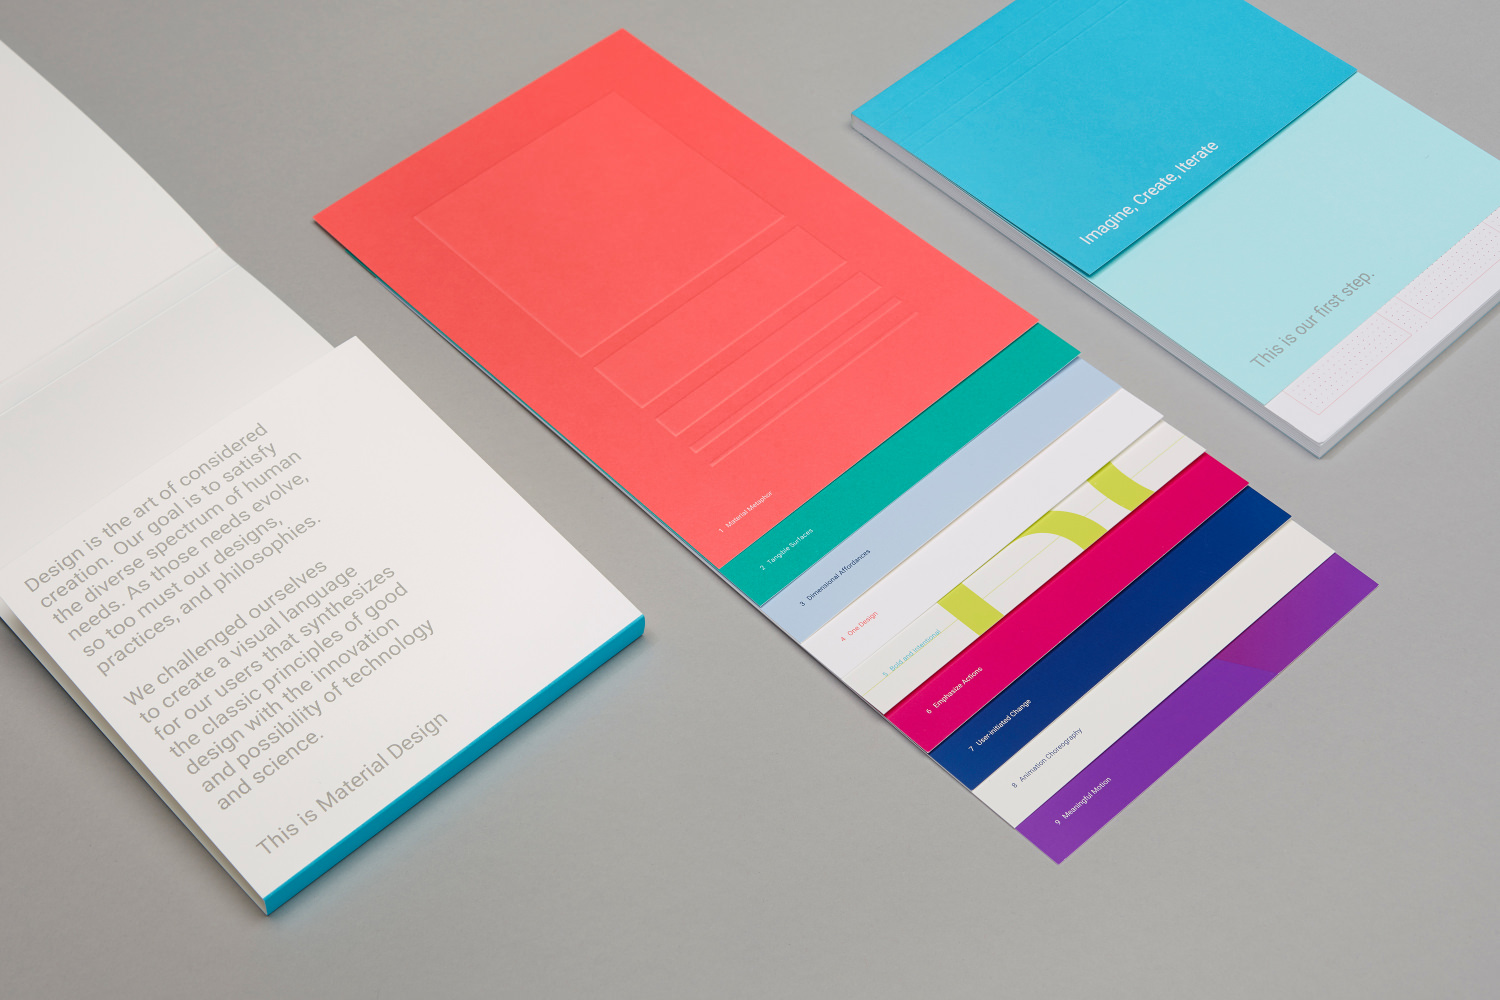 Material Design in Print